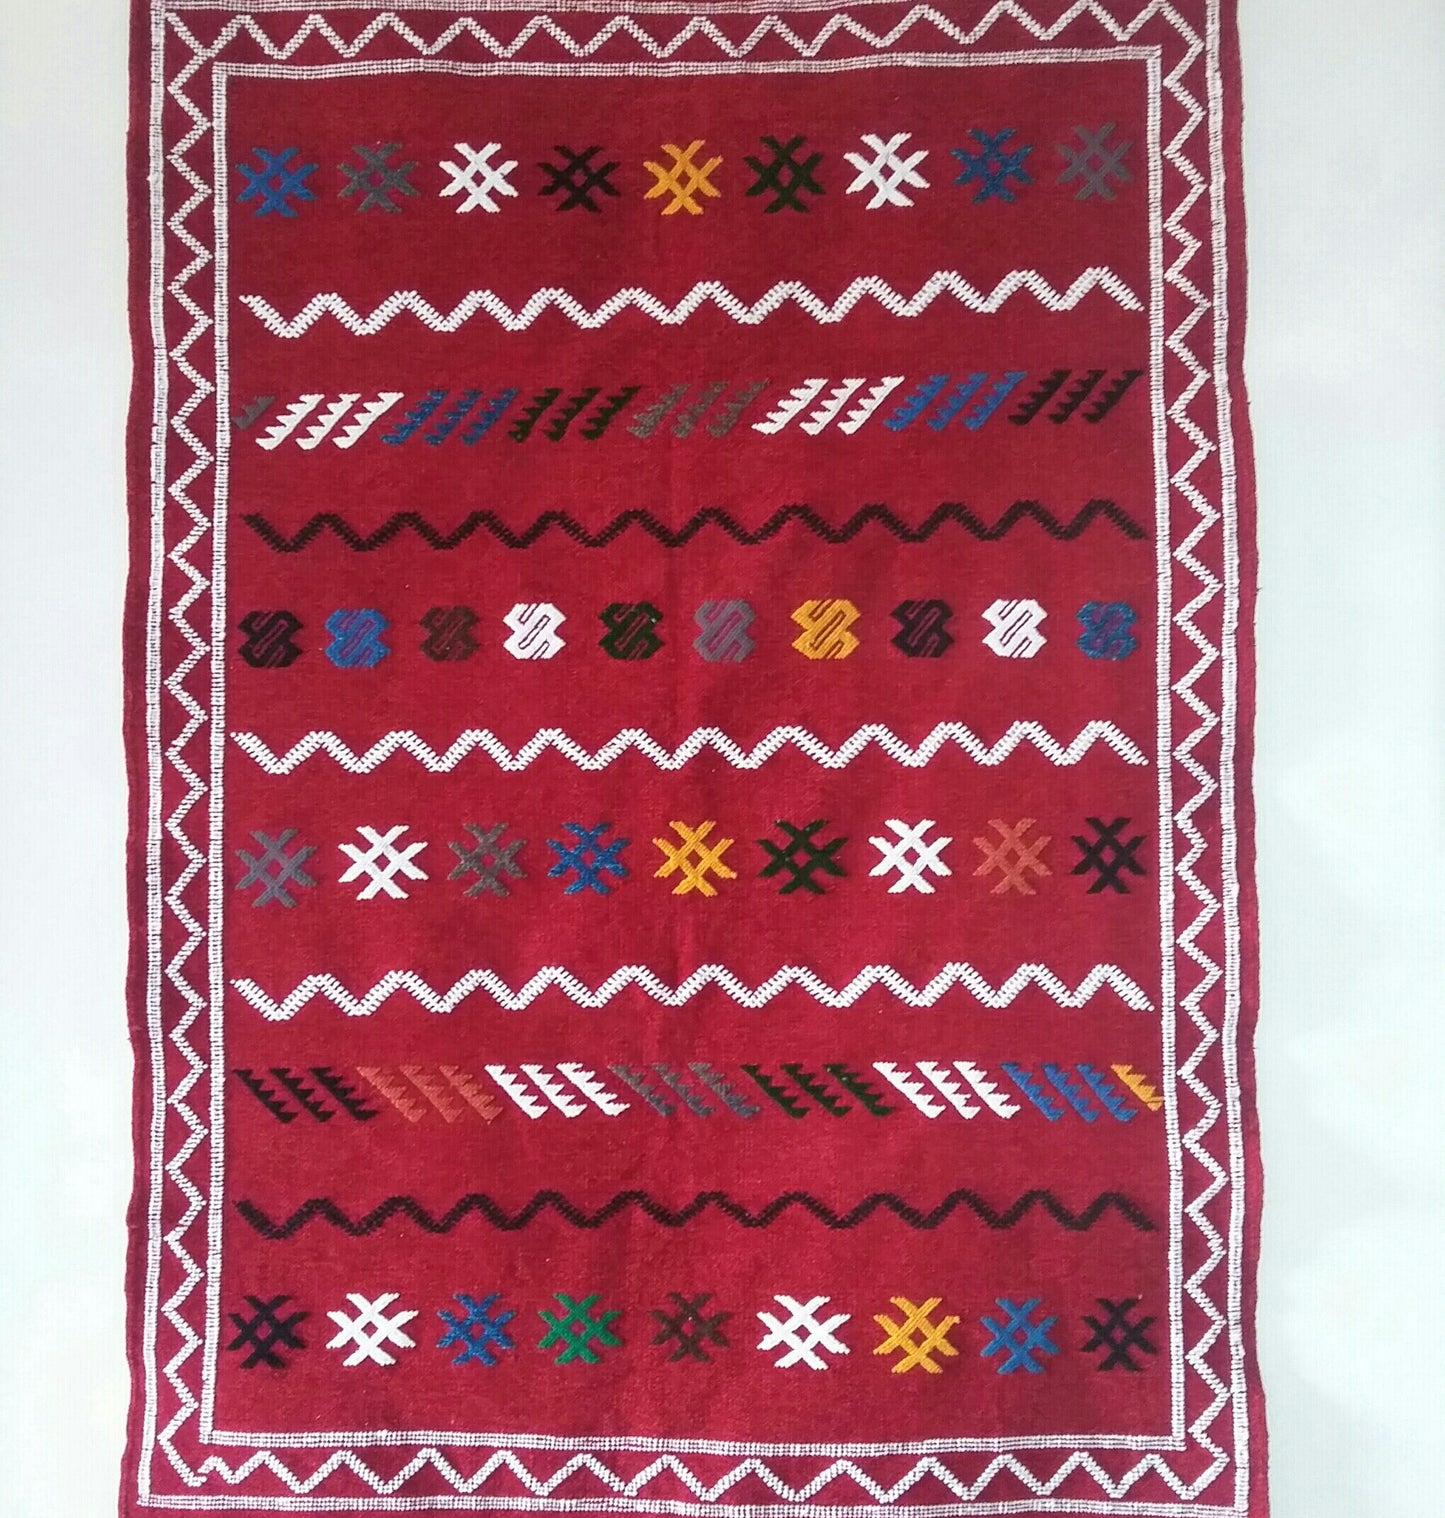 Morocco, Coopérative Nakasha, Rug Weaving